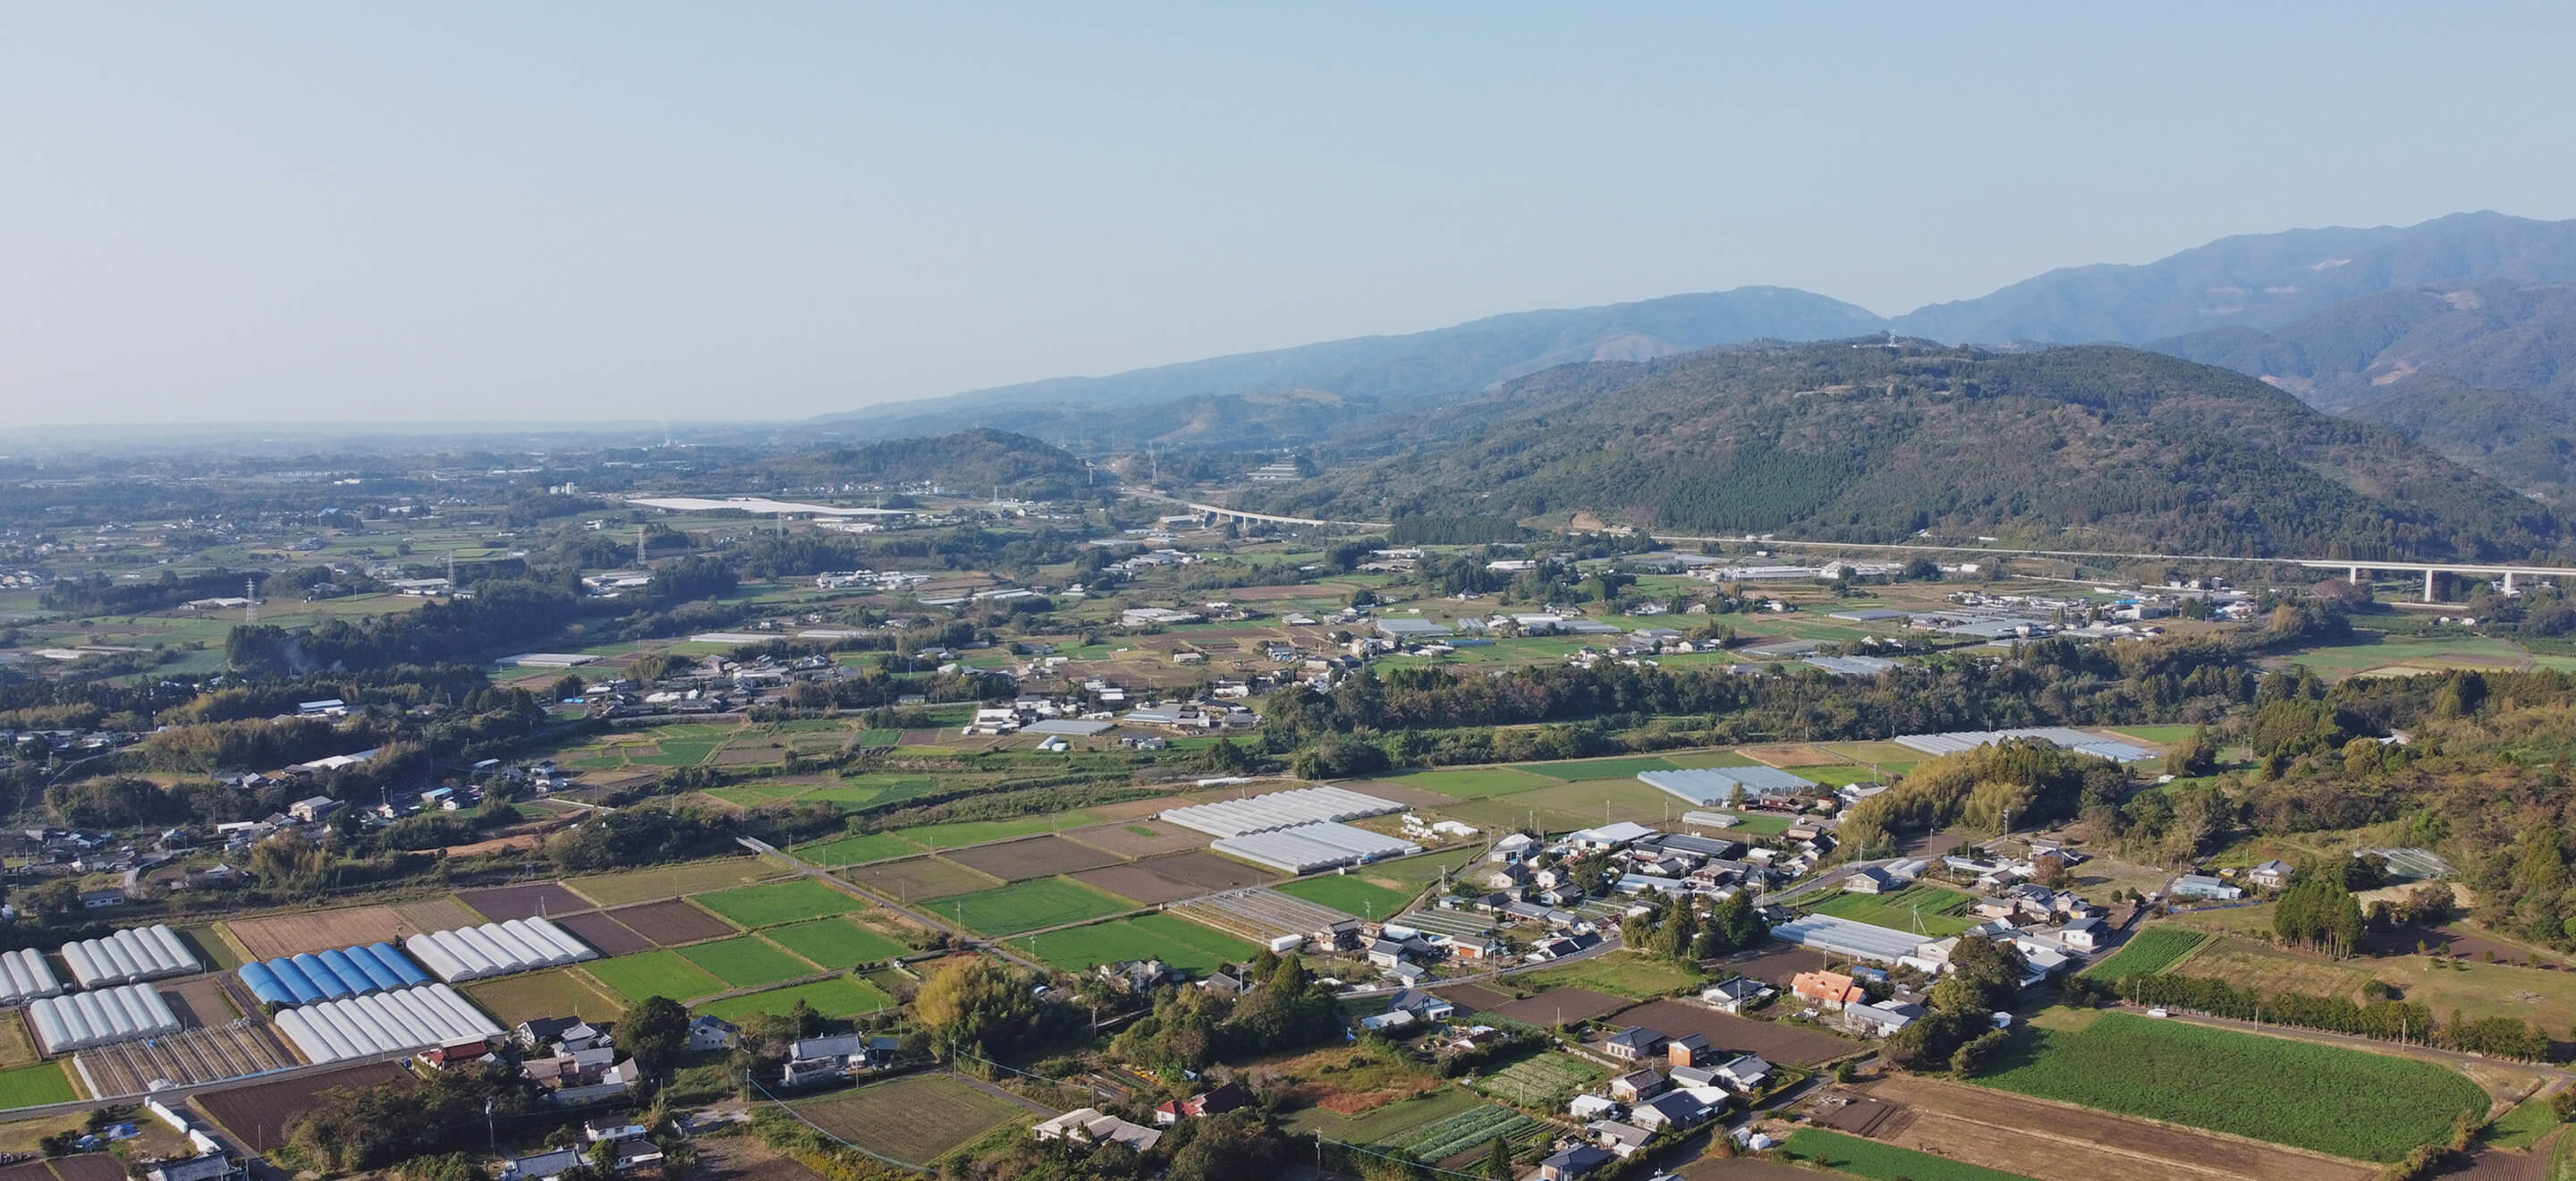 宮崎県津野町の現状課題と都市計画「移住」についてのイメージ画像が表示されています。